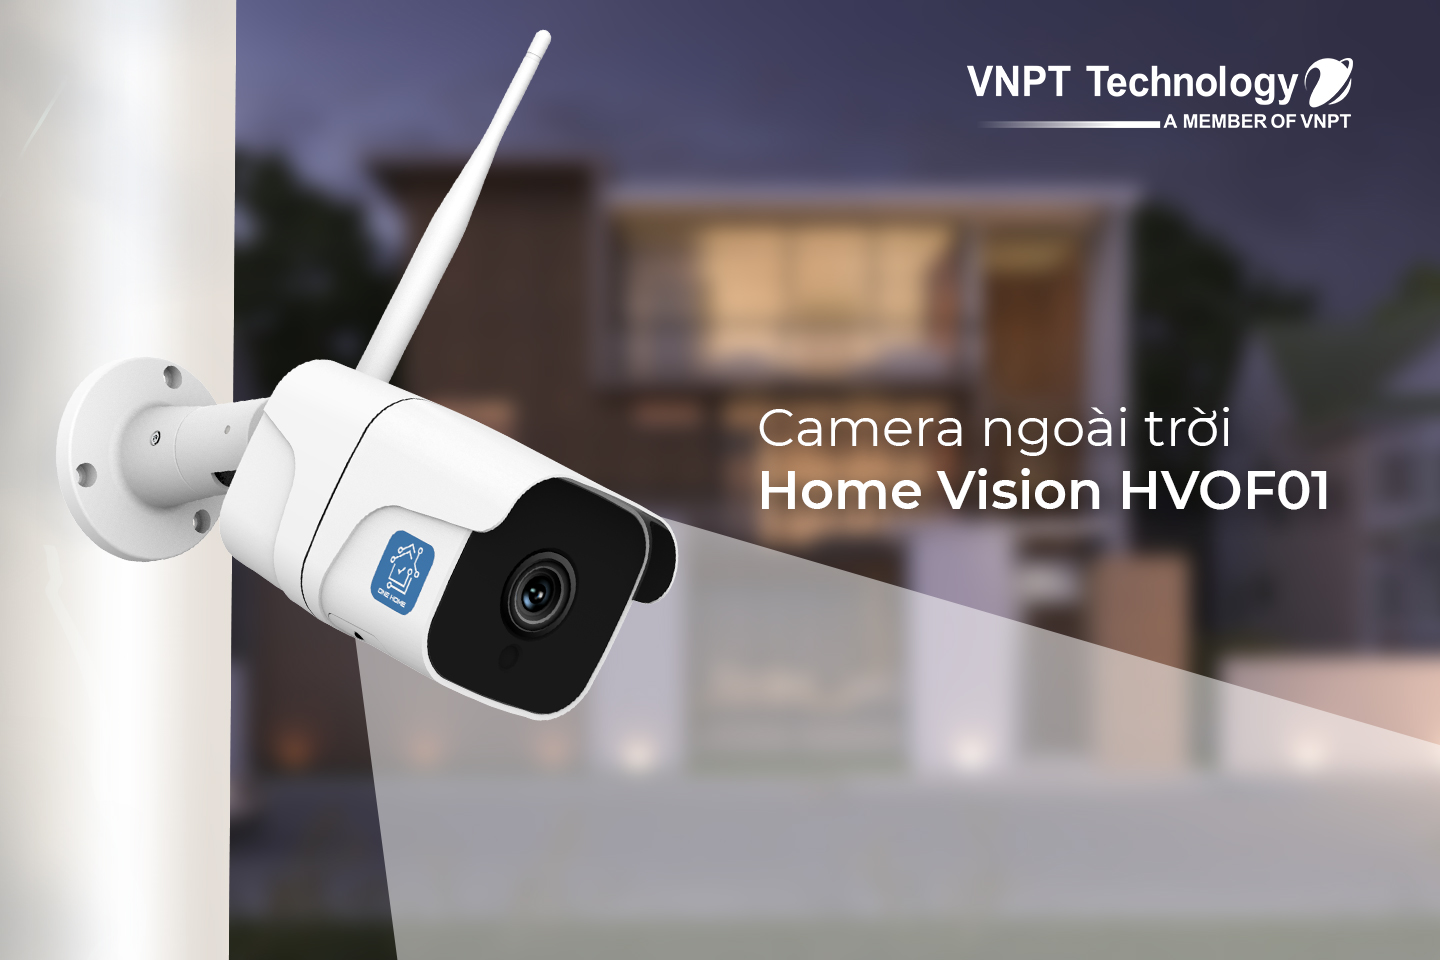 VNPT Technology đã quyết định nghiên cứu phát triển và làm chủ hoàn toàn sản phẩm IP Camera